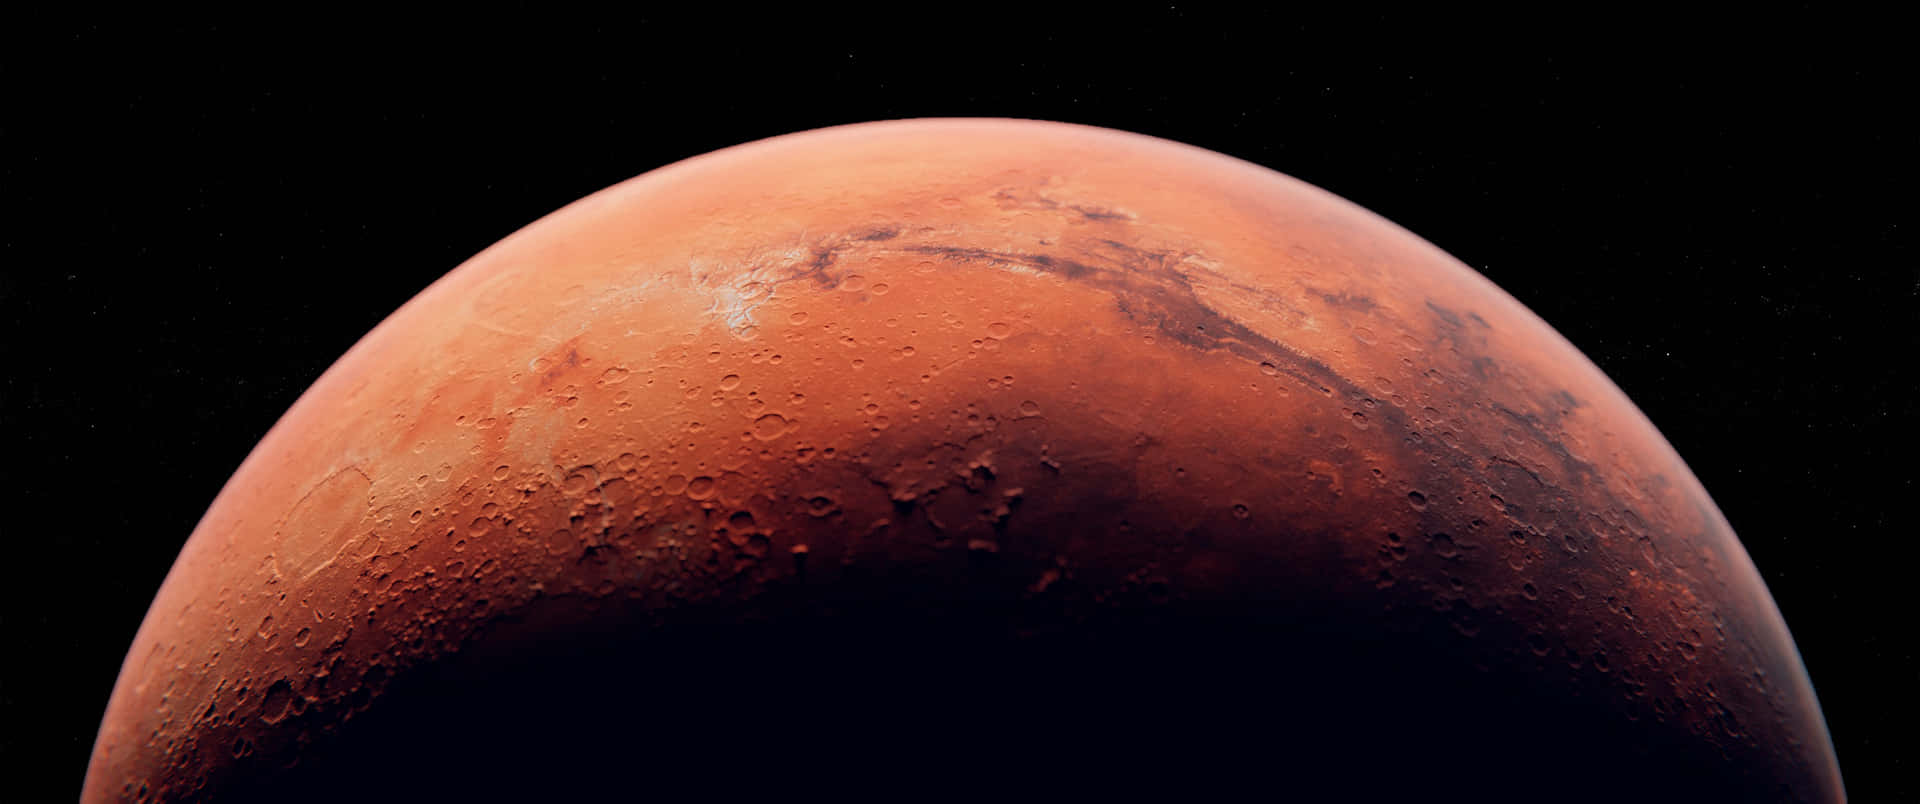 Tag på en rejse ud i det ydre rum og udforsk den mystiske planet, Mars.